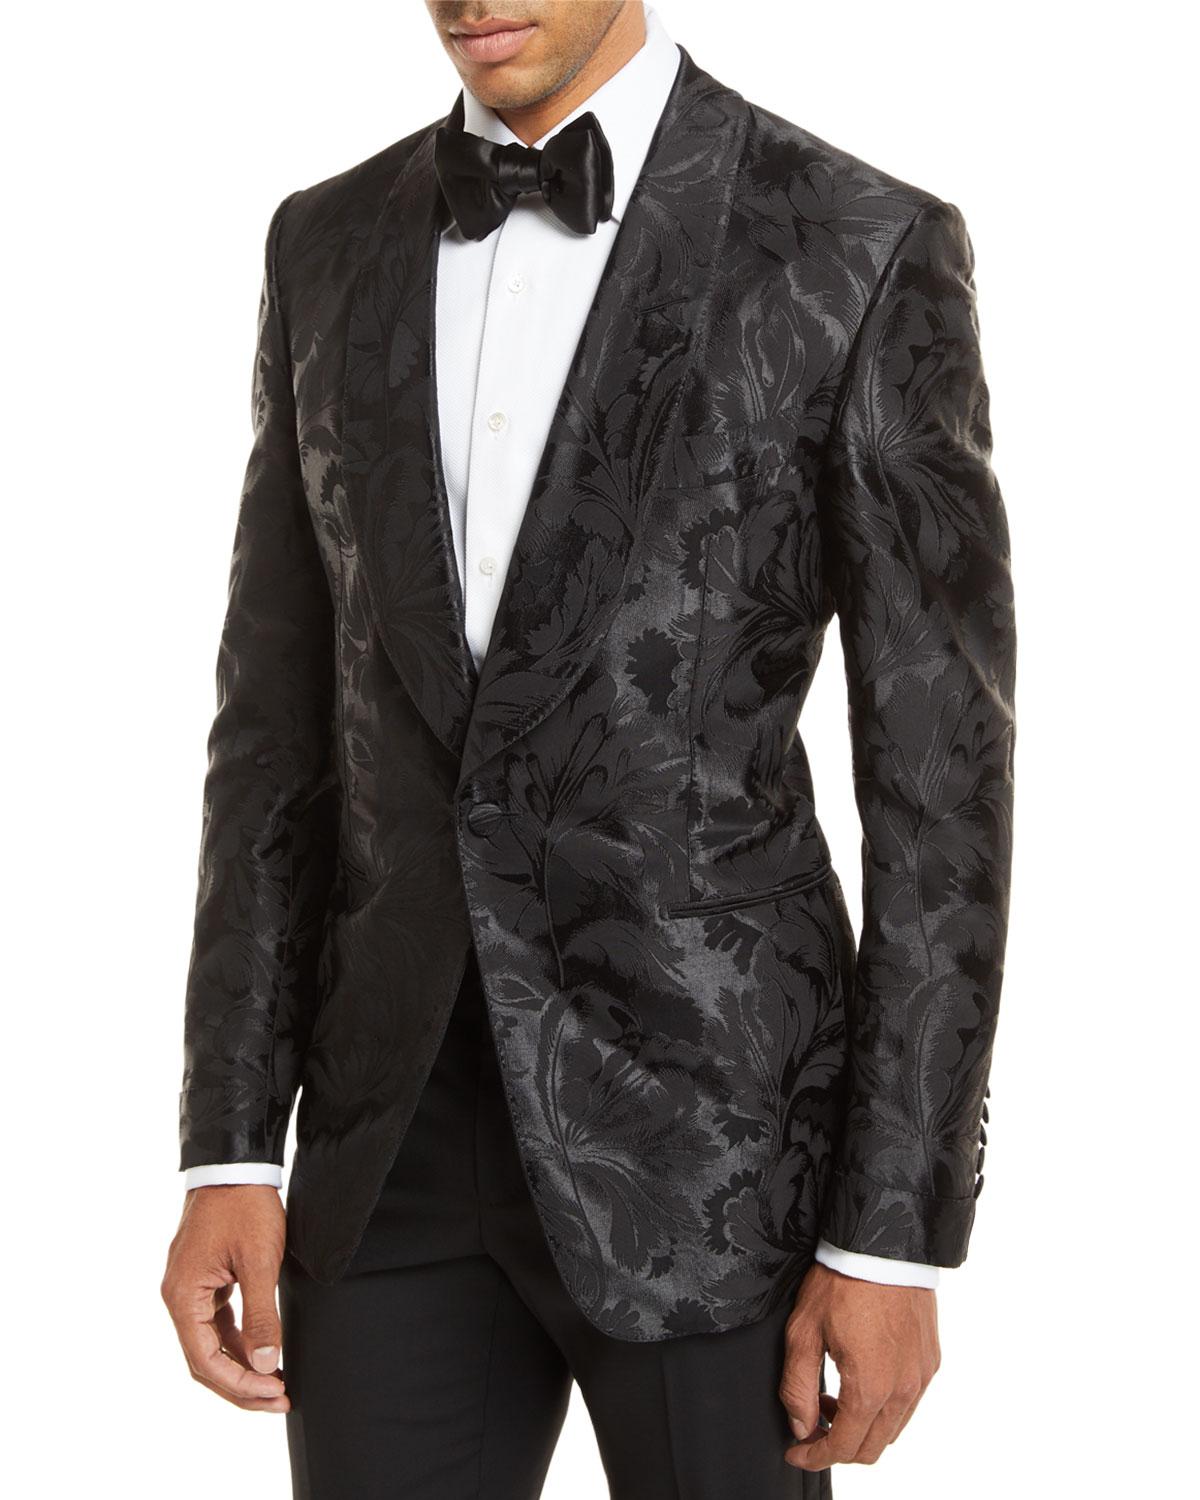 Lyst - Tom Ford Floral Jacquard Dinner Jacket in Black for Men